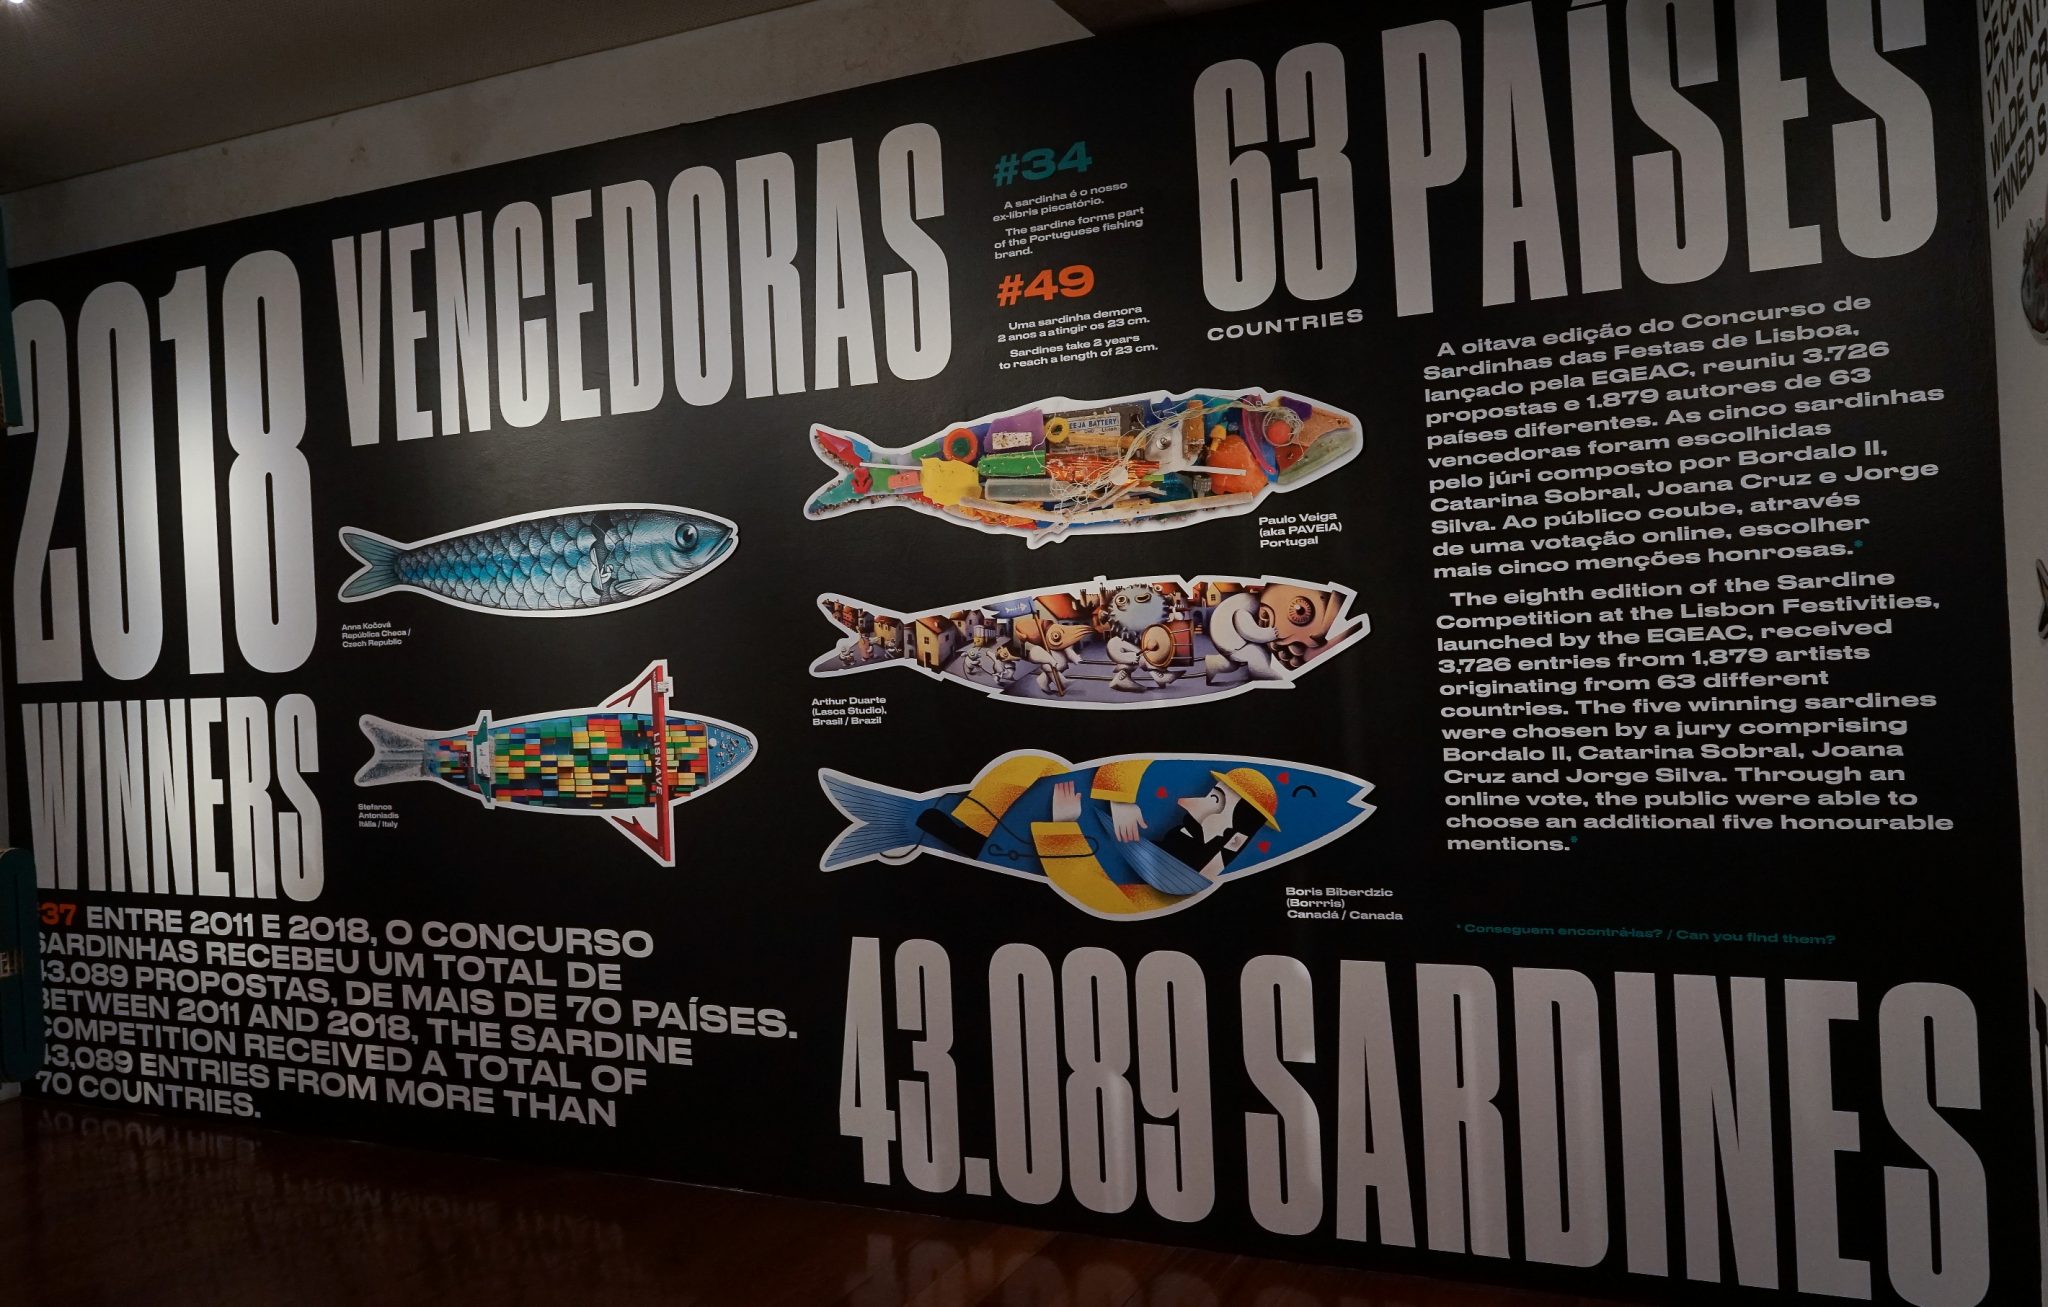 Painel informativo da exposição Salvem a Sardinha com dados relativos ao concurso